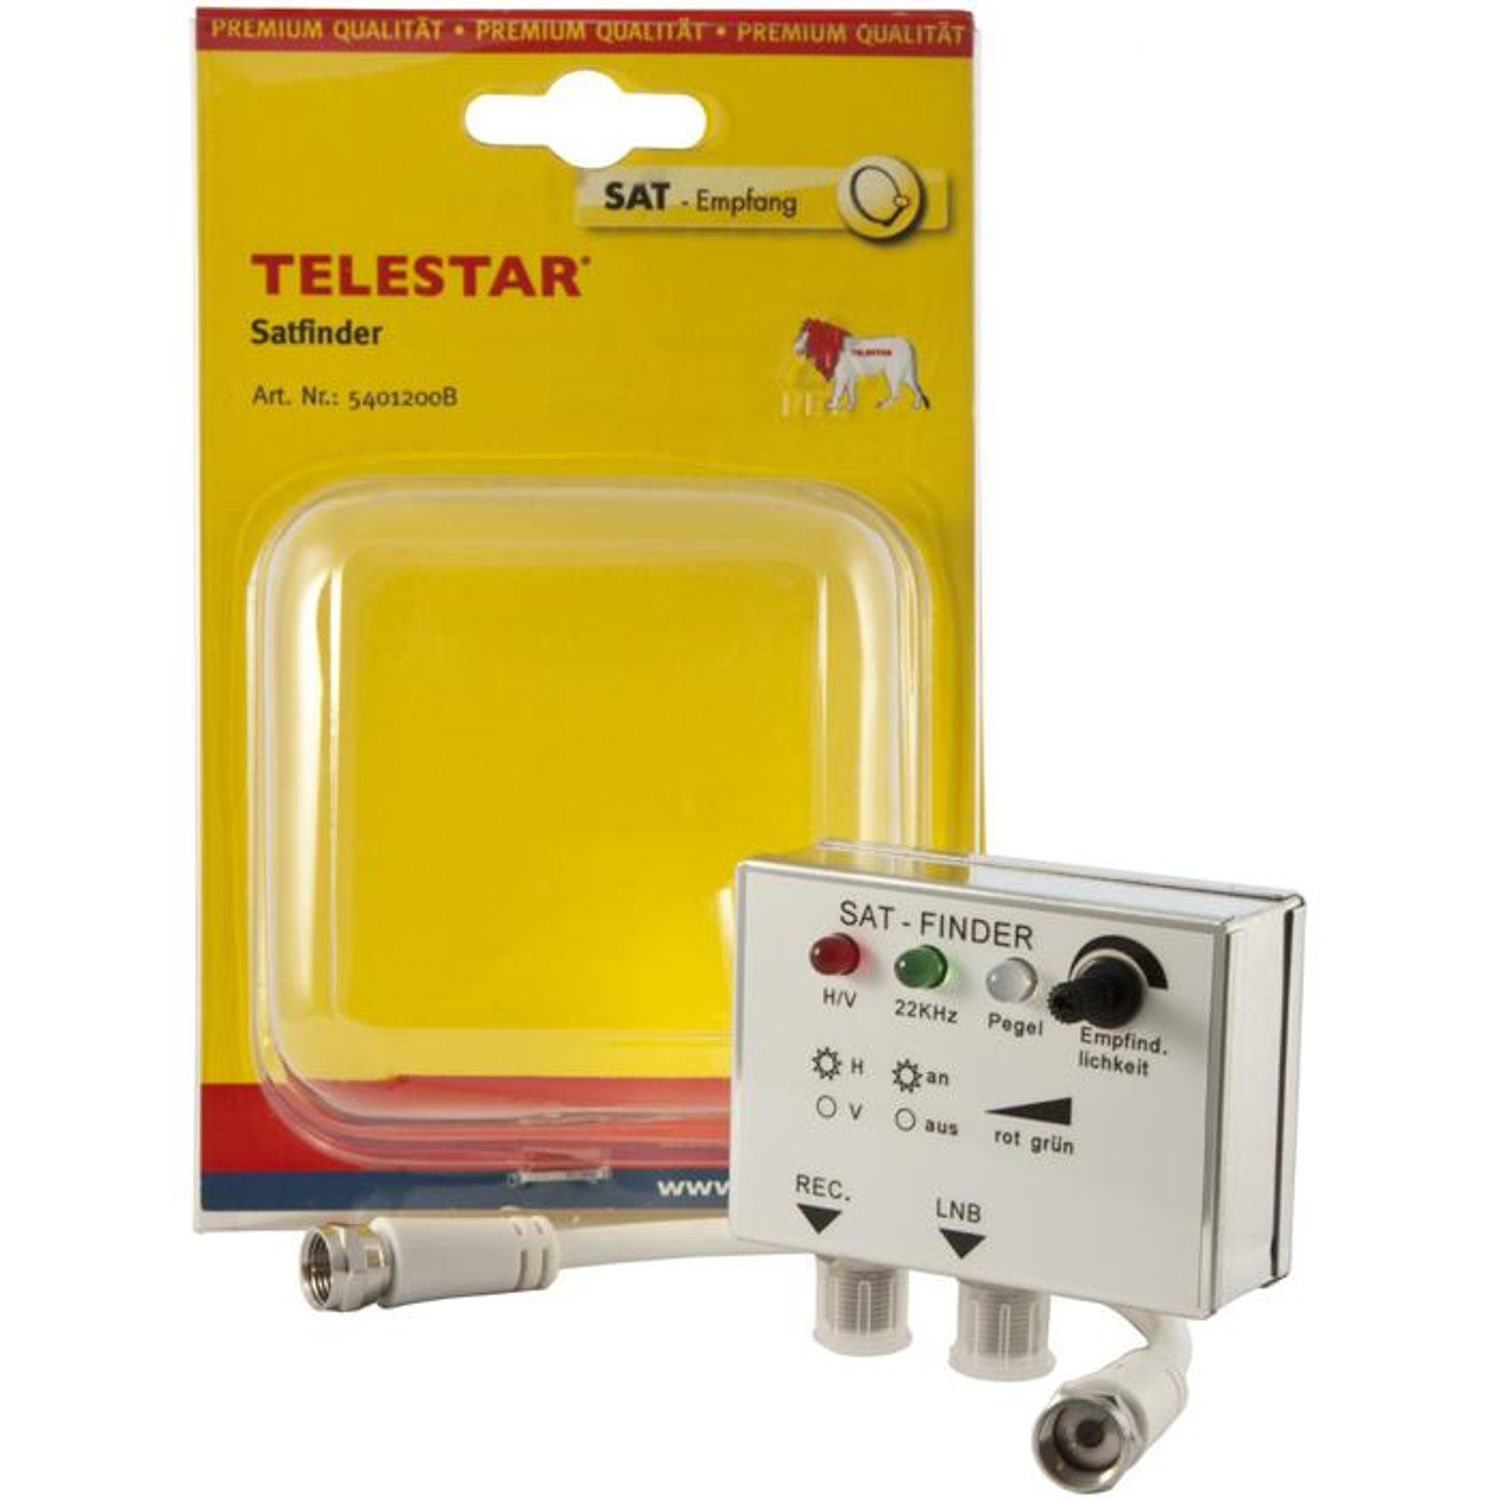 TELESTAR LED Satellitenfinder Satfinder mit